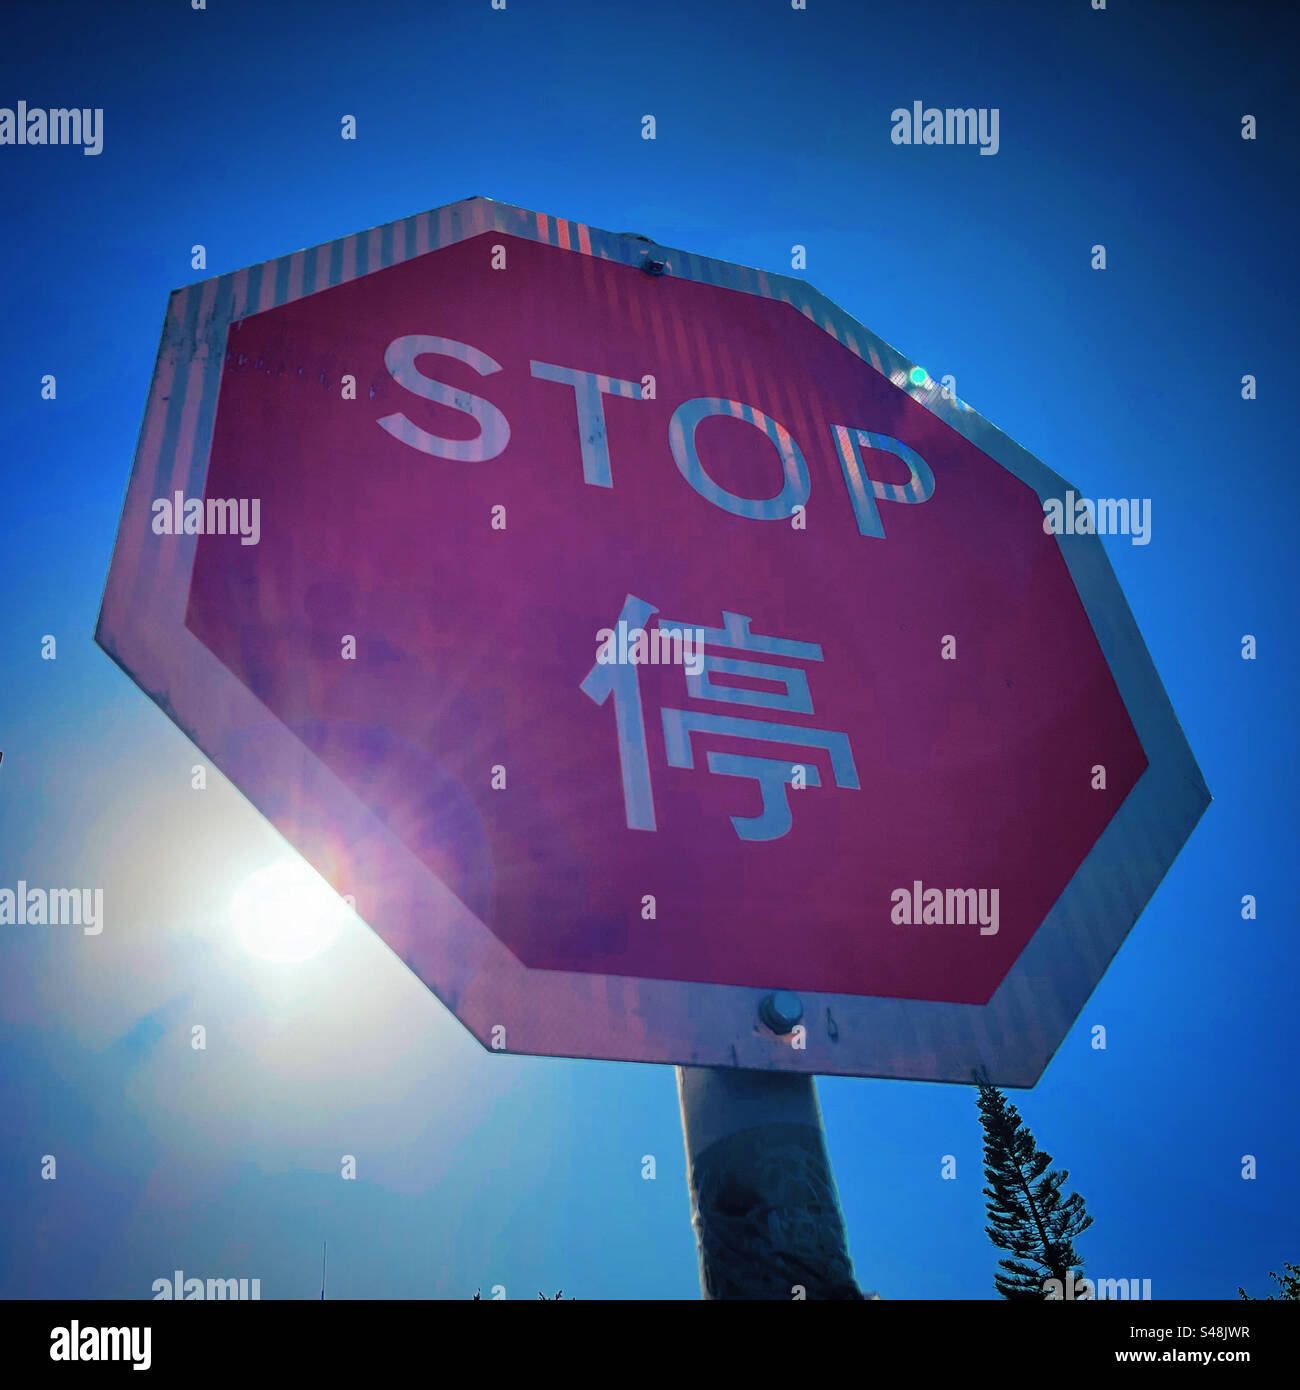 Halten Sie das Straßenschild von hk mit einem Sonnenstrahl in einem dynamischen Winkel vor einem klaren blauen Himmel während des Tages aus nächster Nähe an Stockfoto